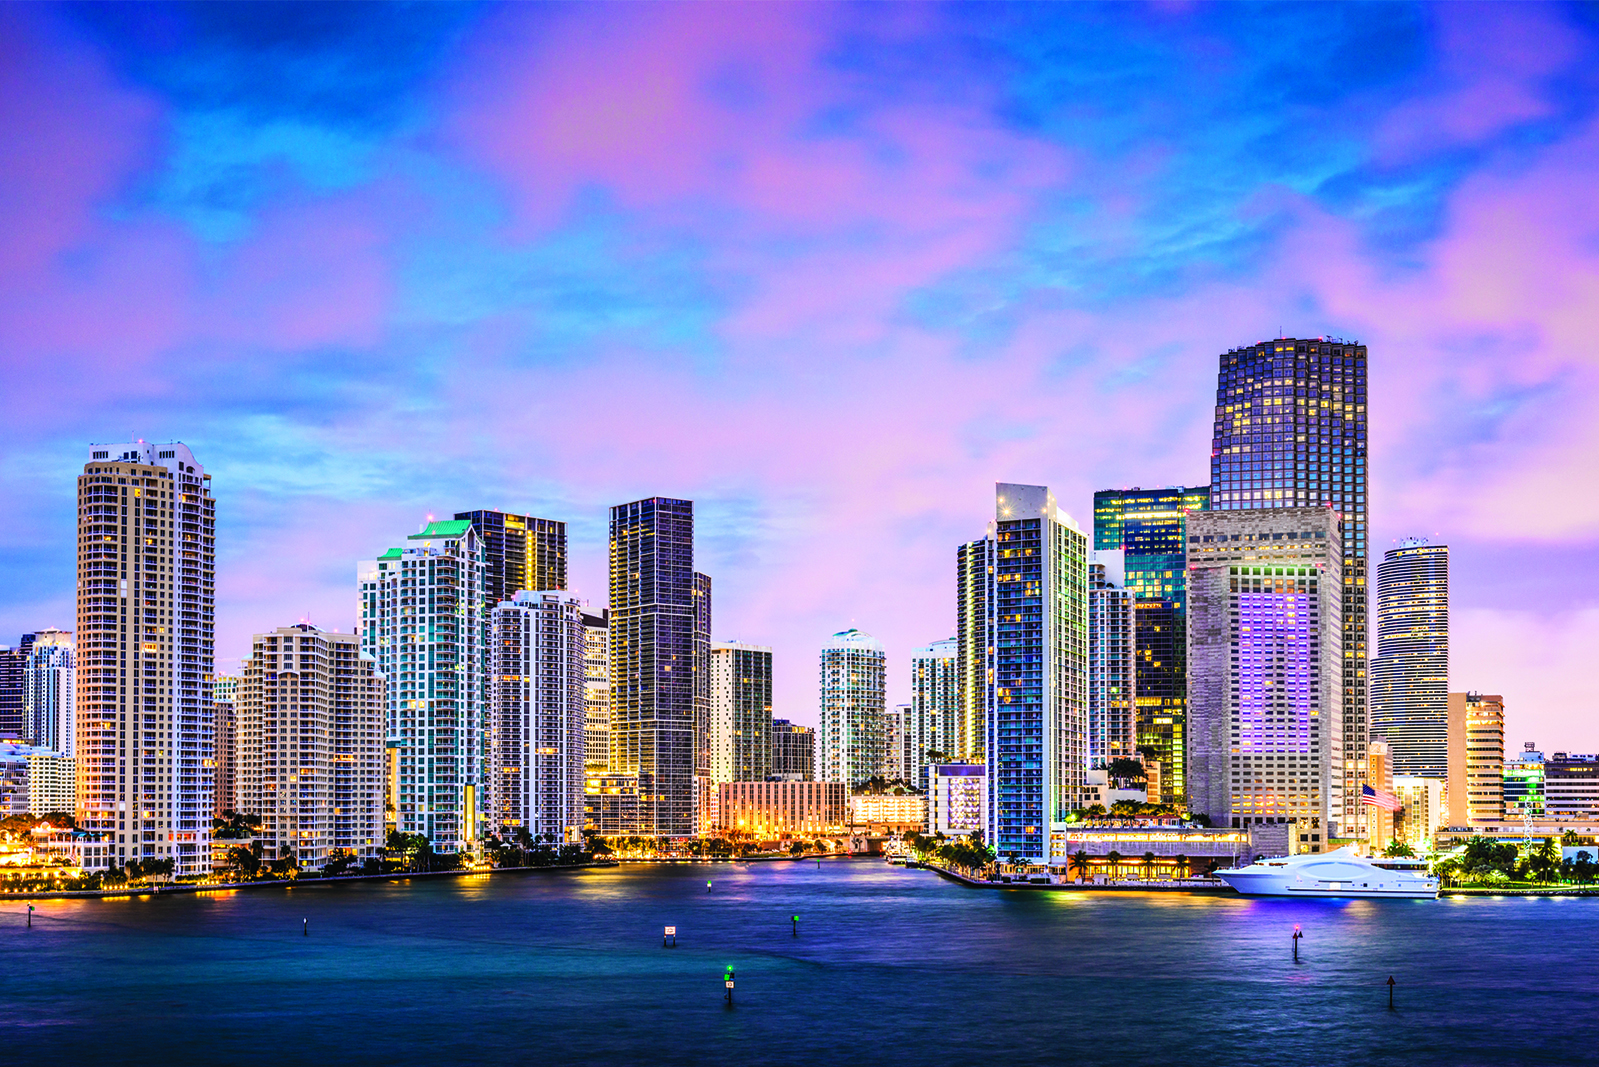 Cityscape in Miami, Florida